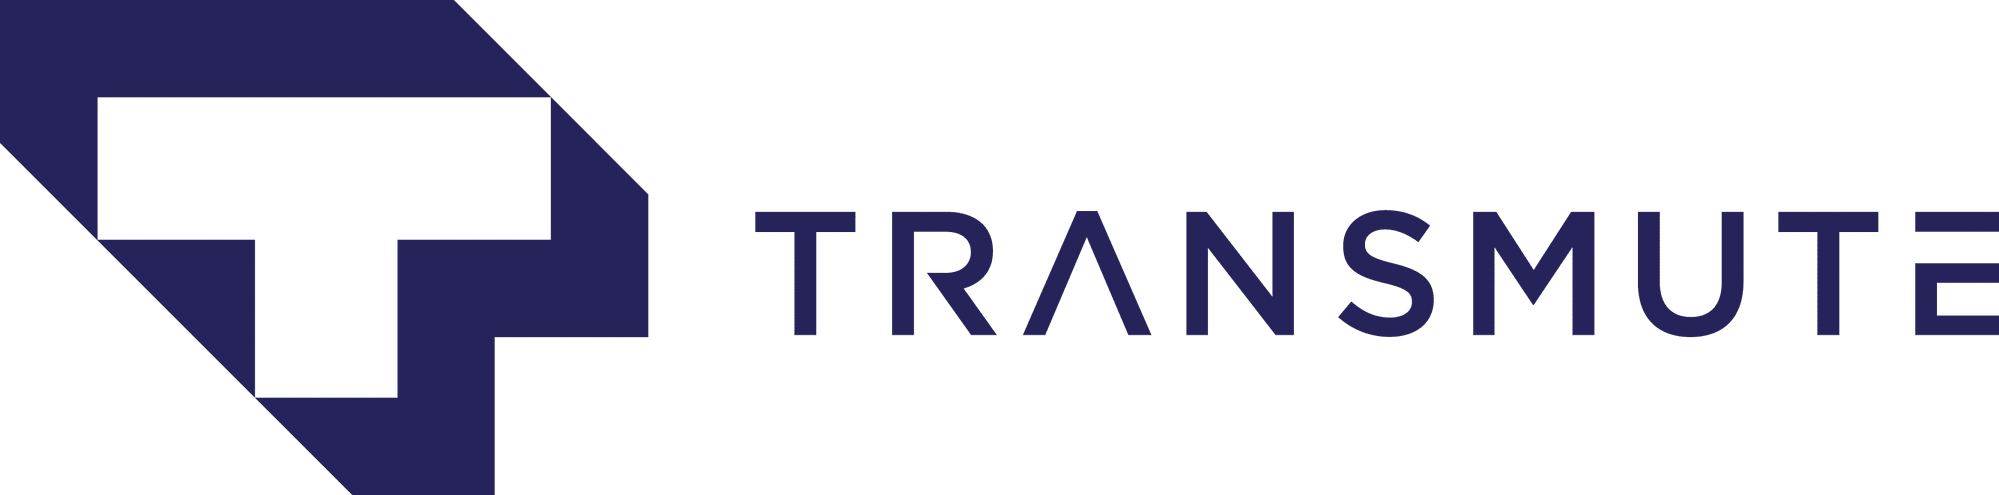 Transmute logo